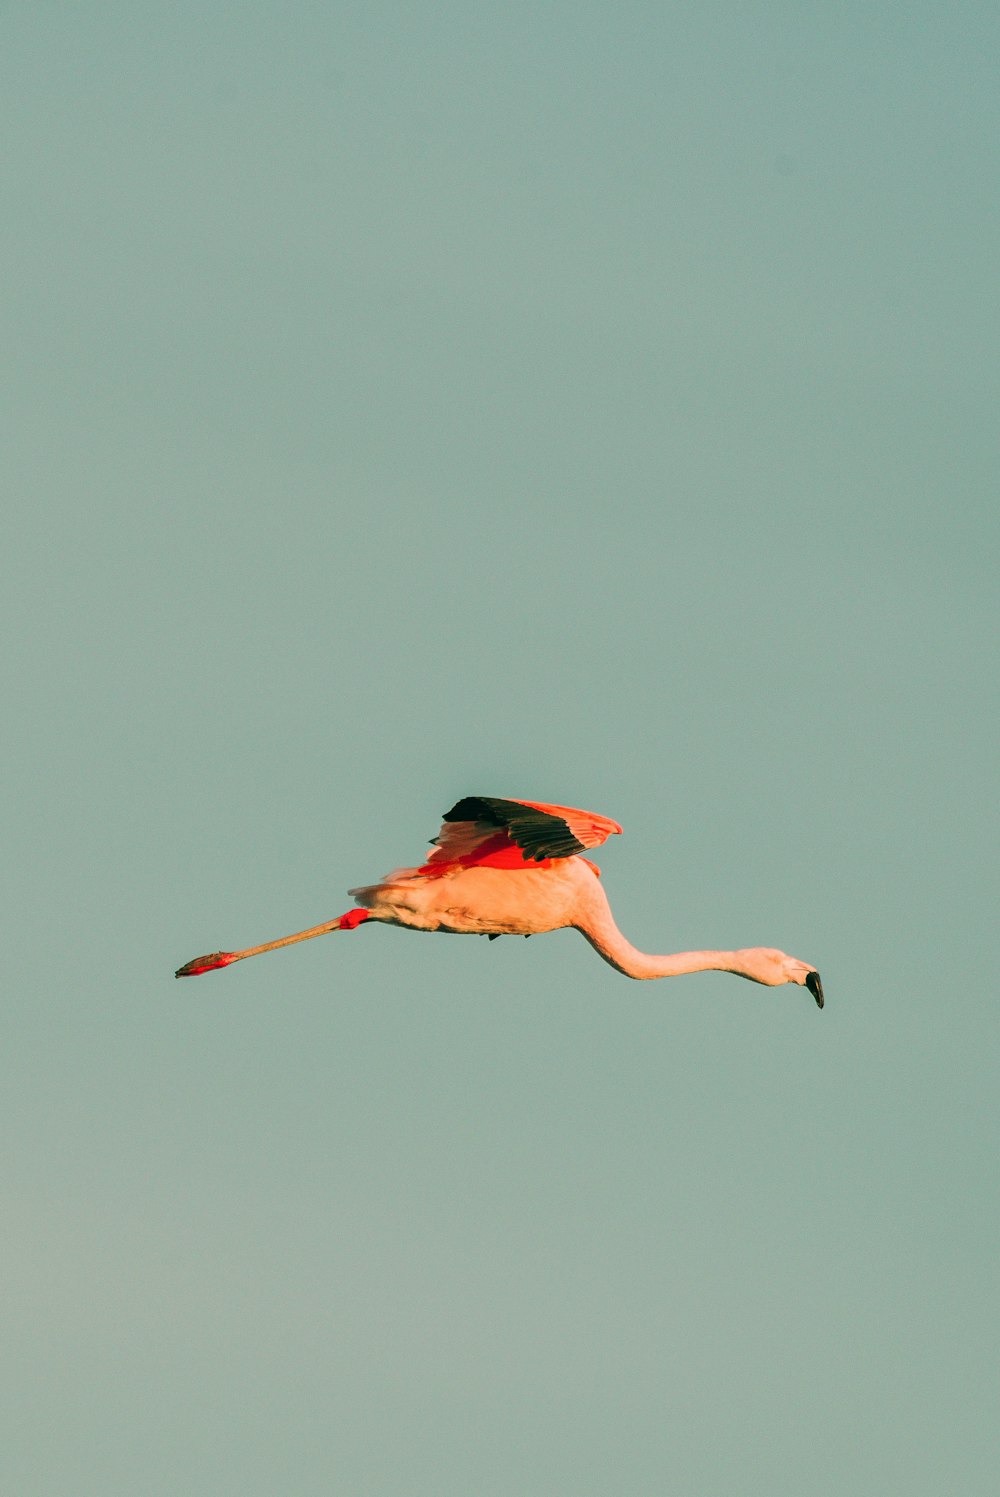 un flamenco volando a través de un cielo azul